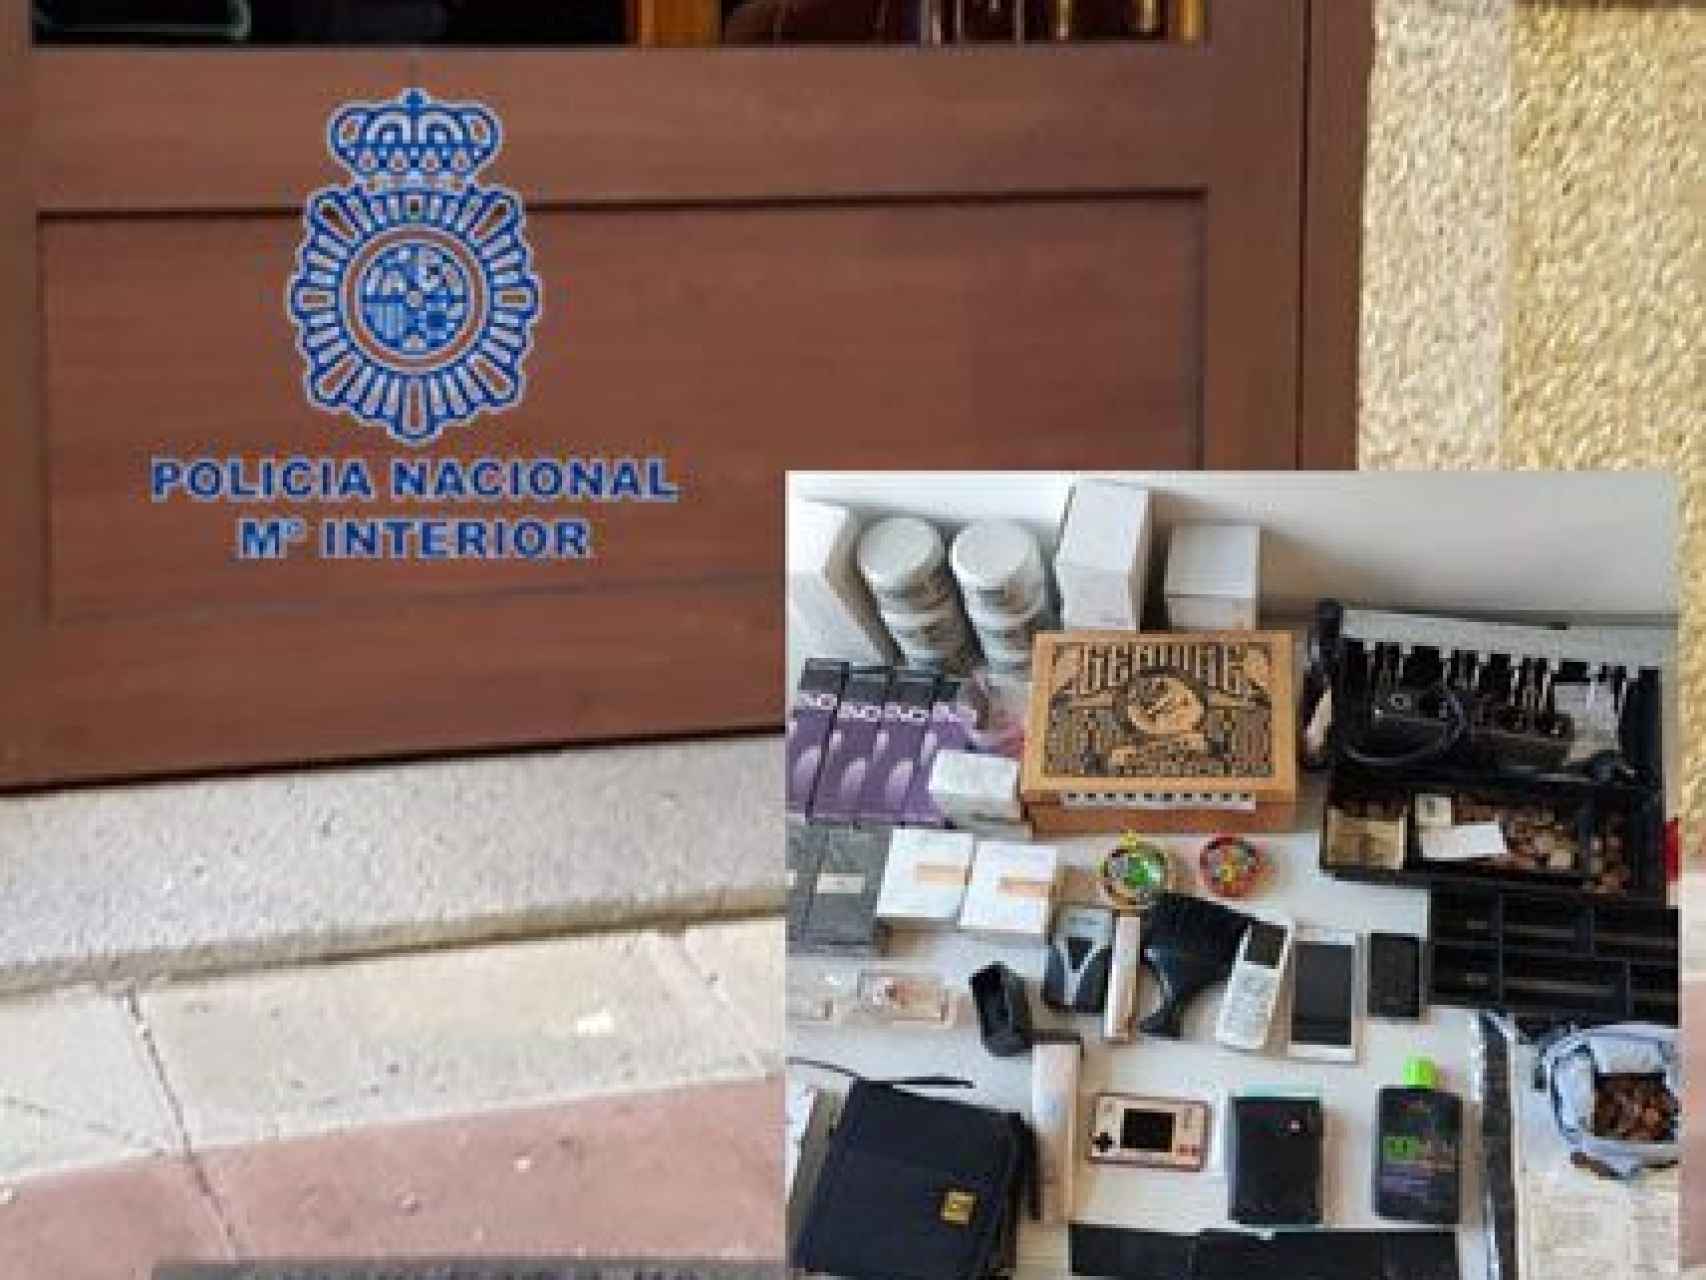 Imagen de los objetos intervenidos facilitada por la Policía Nacional